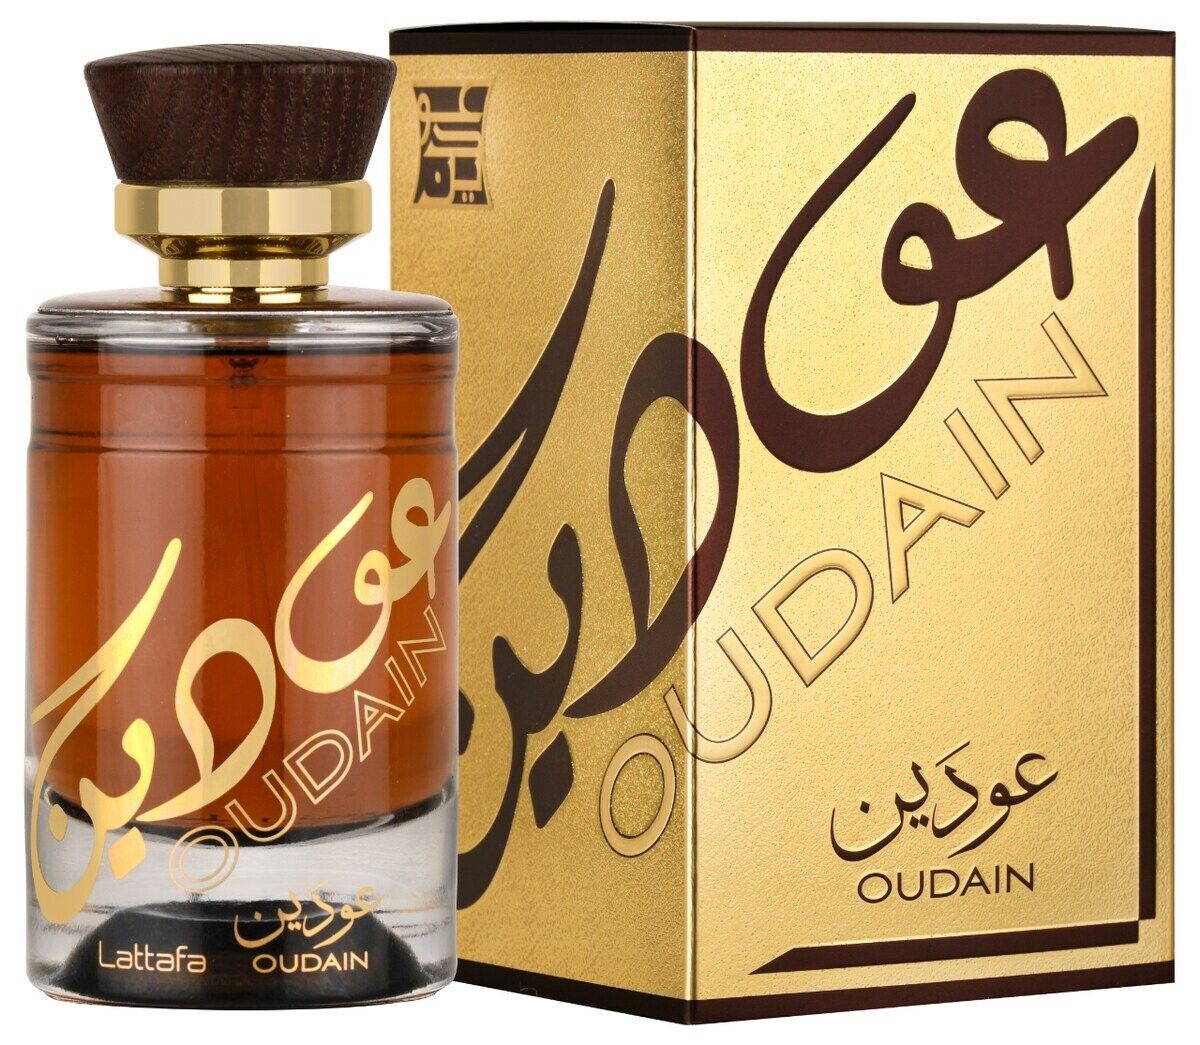 Oudain EDP (100ml) perfume spray by Lattafa